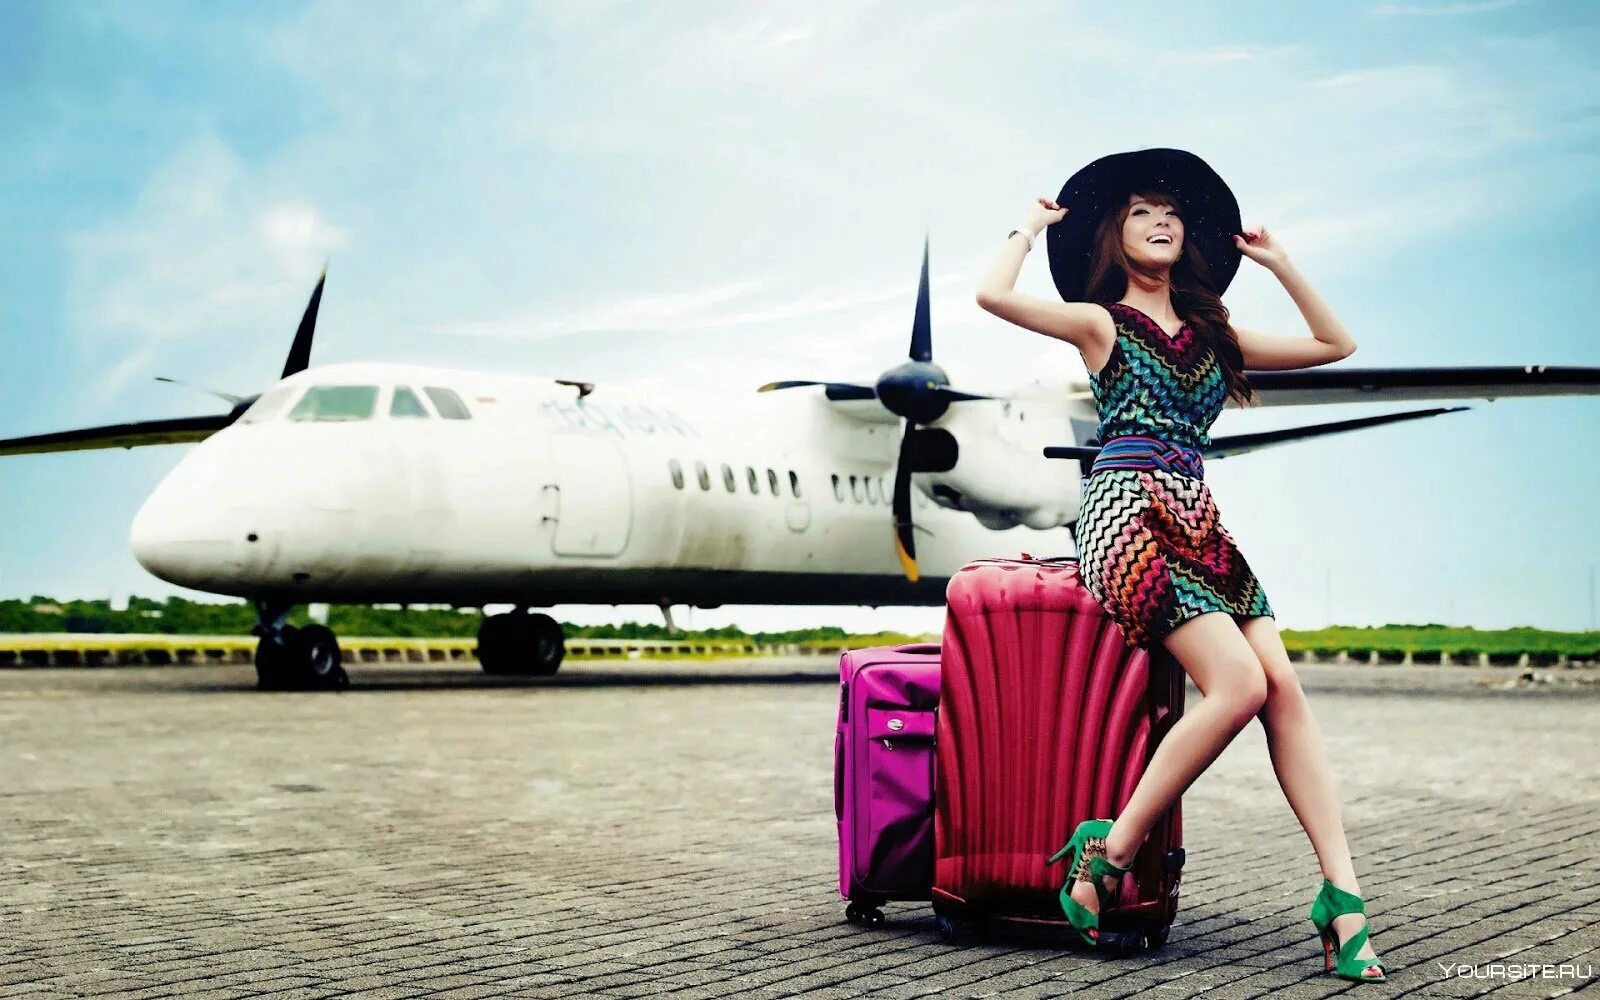 Полетели в путешествие. Девушка с чемоданом. Девушка путешественница. Девушка чемодан самолет. Девушка путешествует.